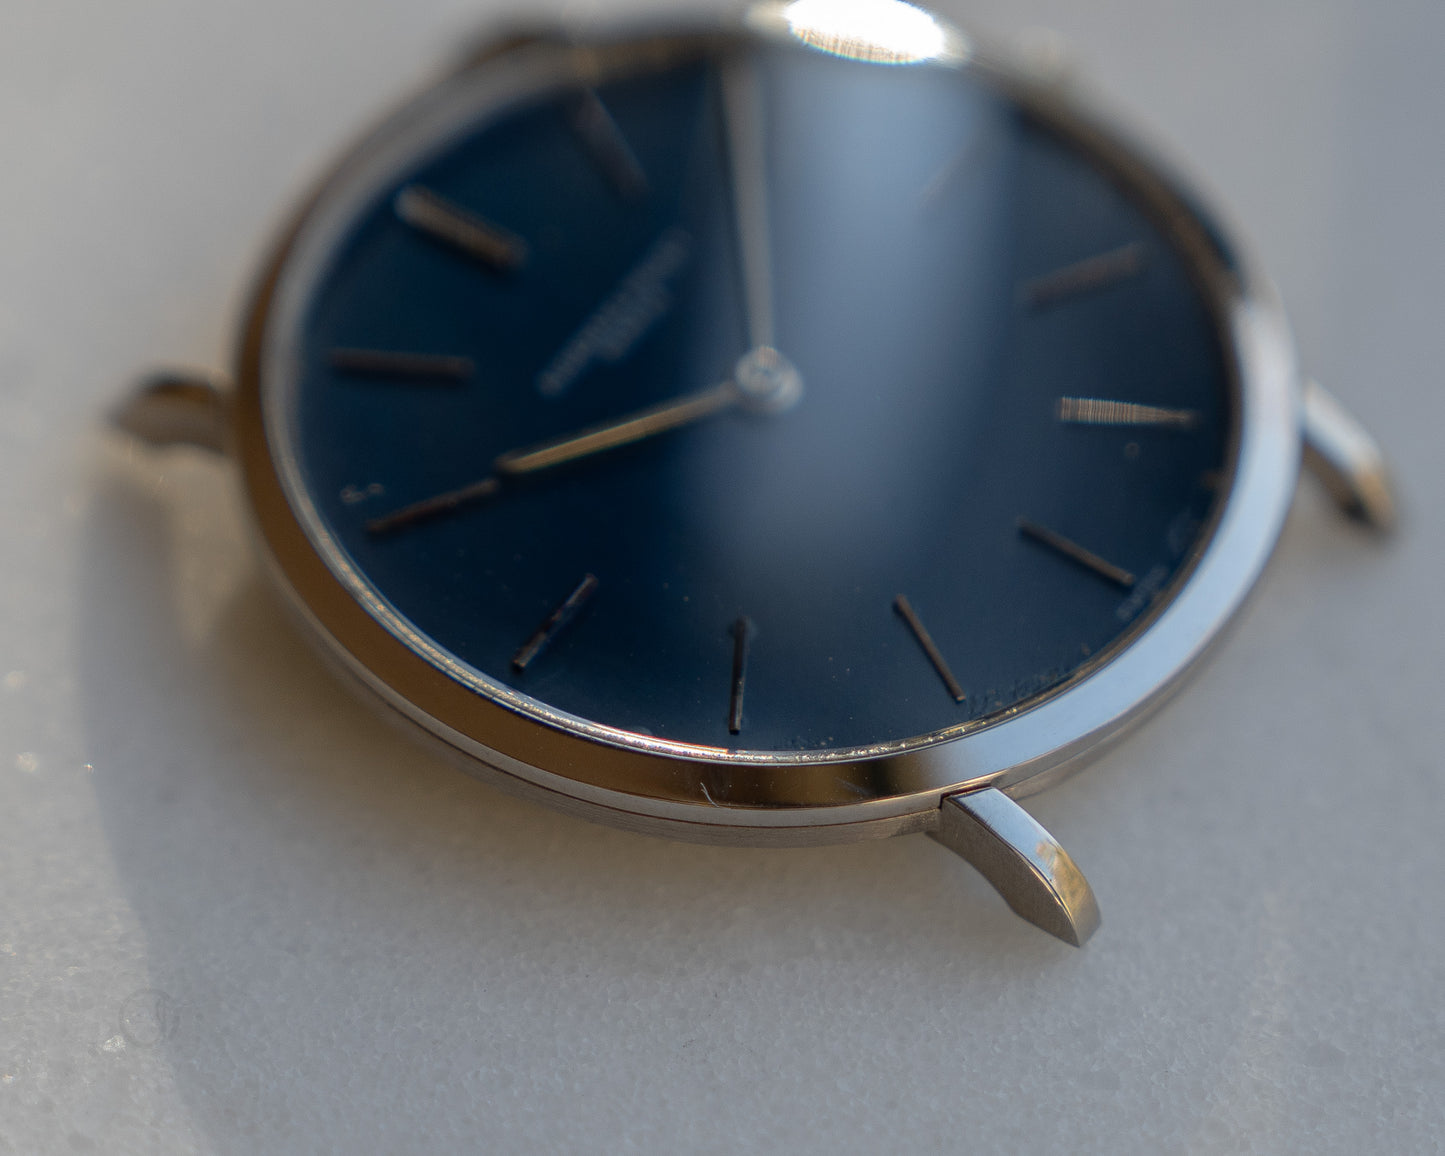 Audemars Piguet White Gold Ultra thin dress watch, Blue dial, Caliber 2001